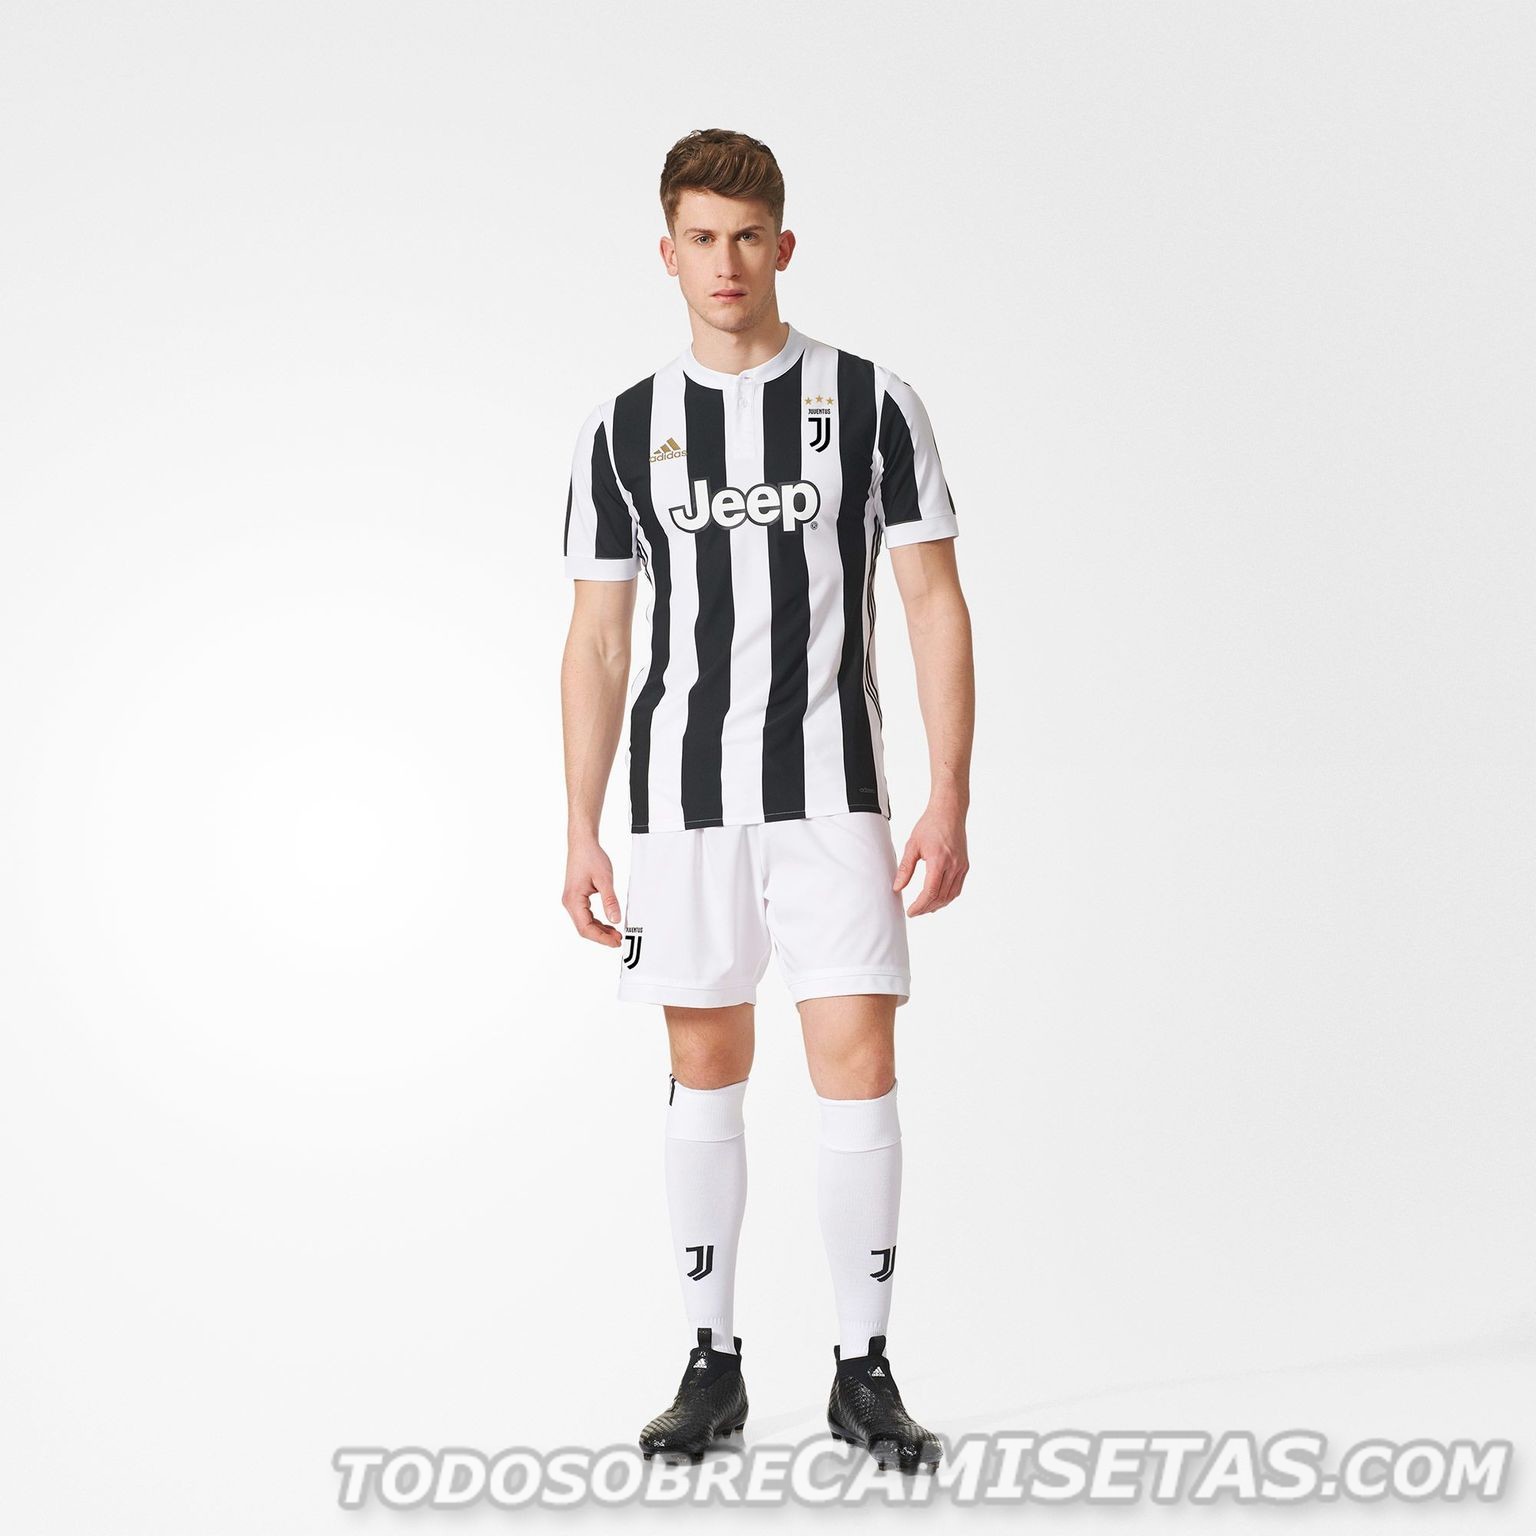 Juventus FC 2017-18 adidas home kit